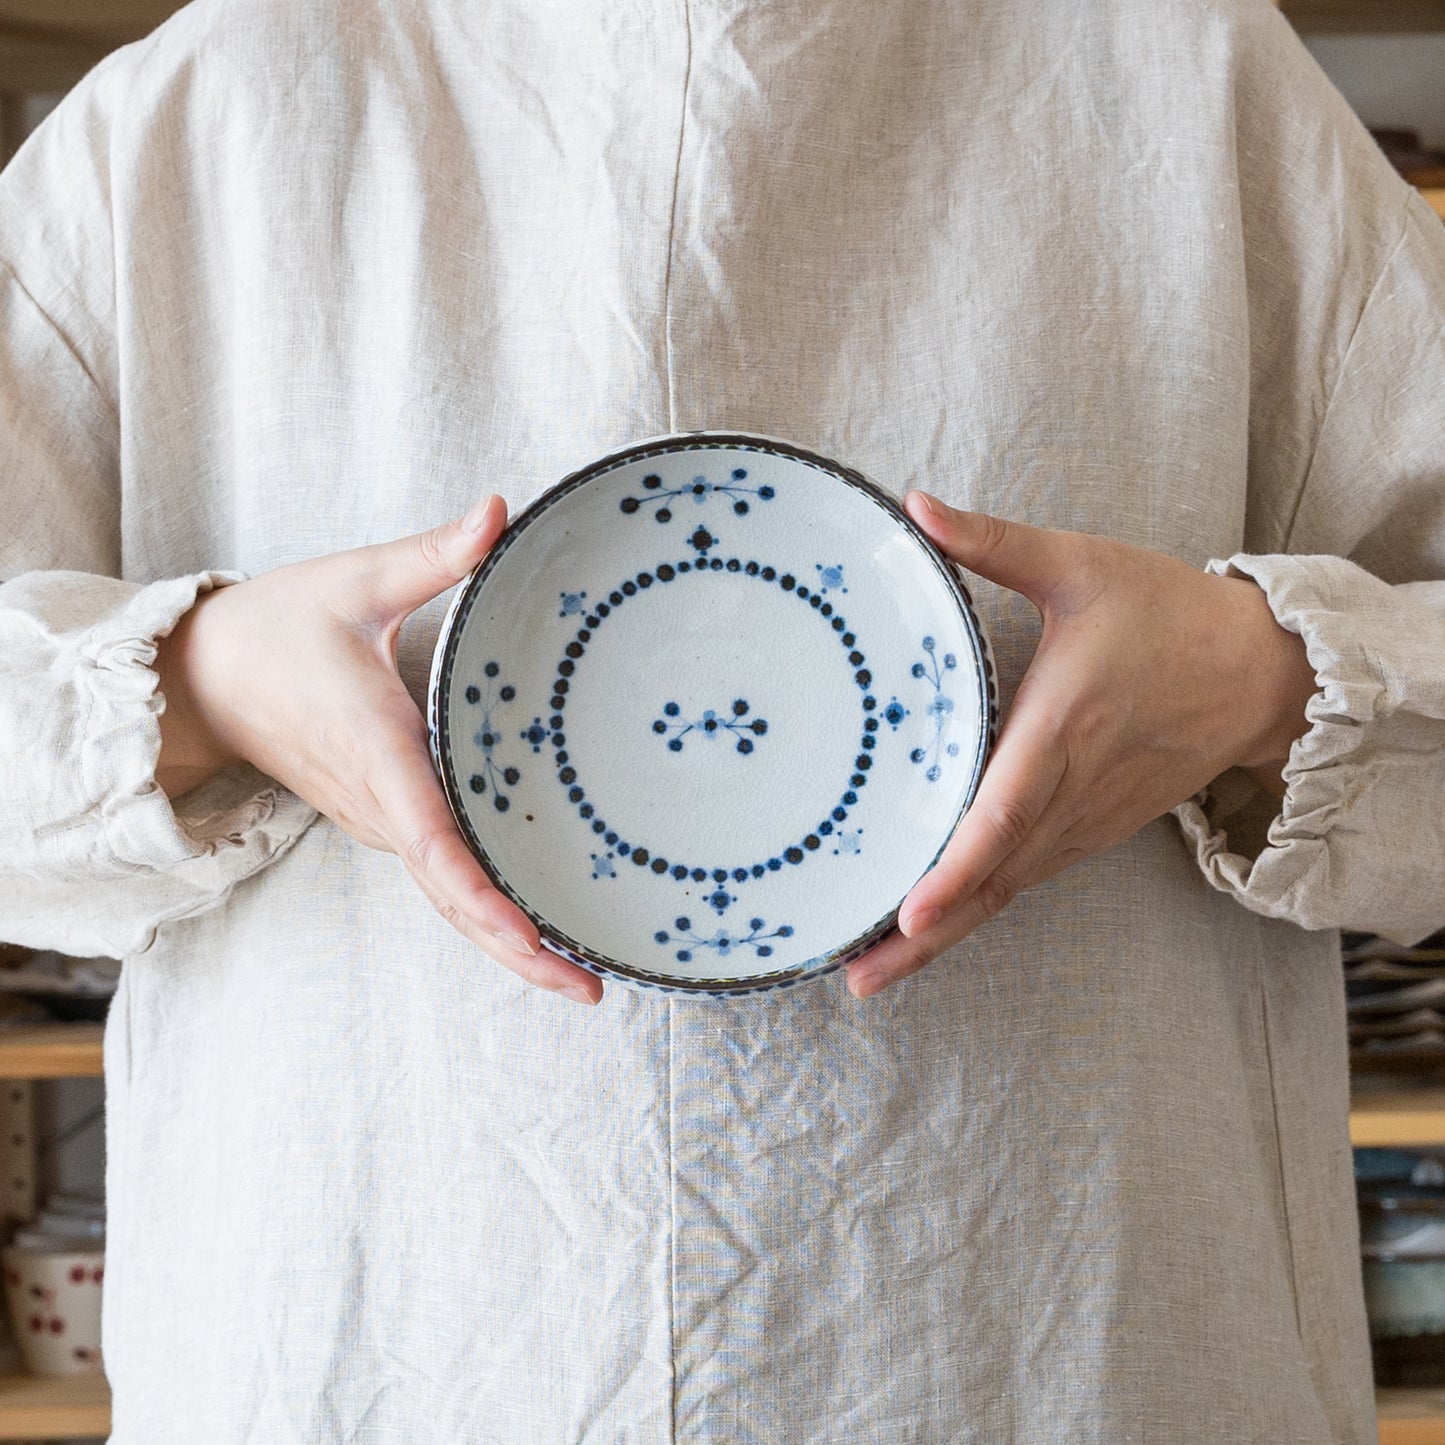 丈夫で使いやすい砥部焼陶彩窯の小花文の5寸深皿